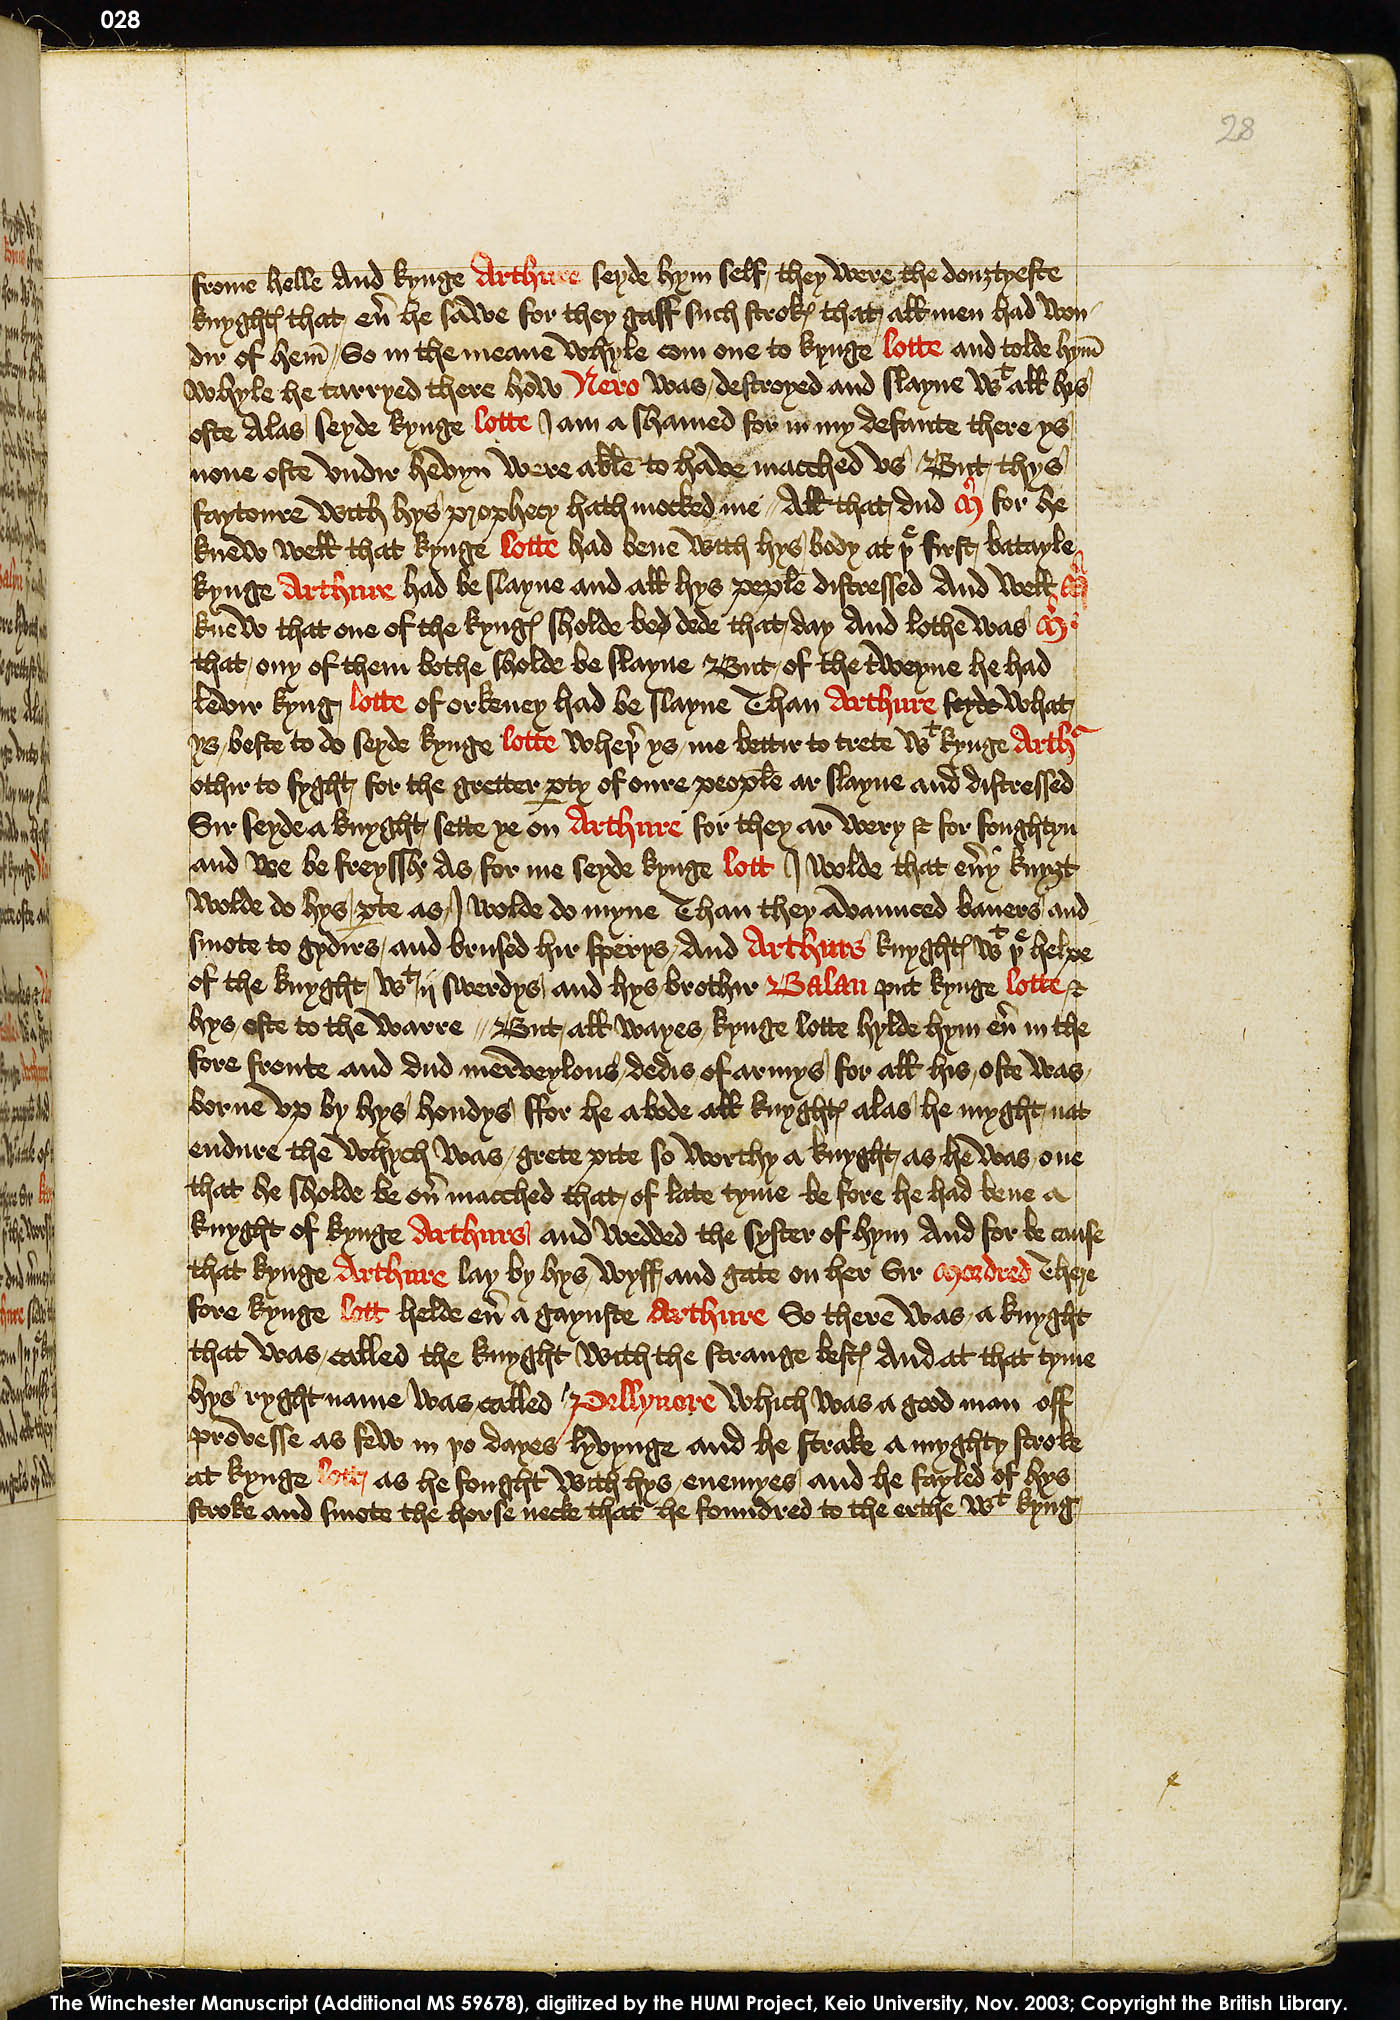 Folio 28r